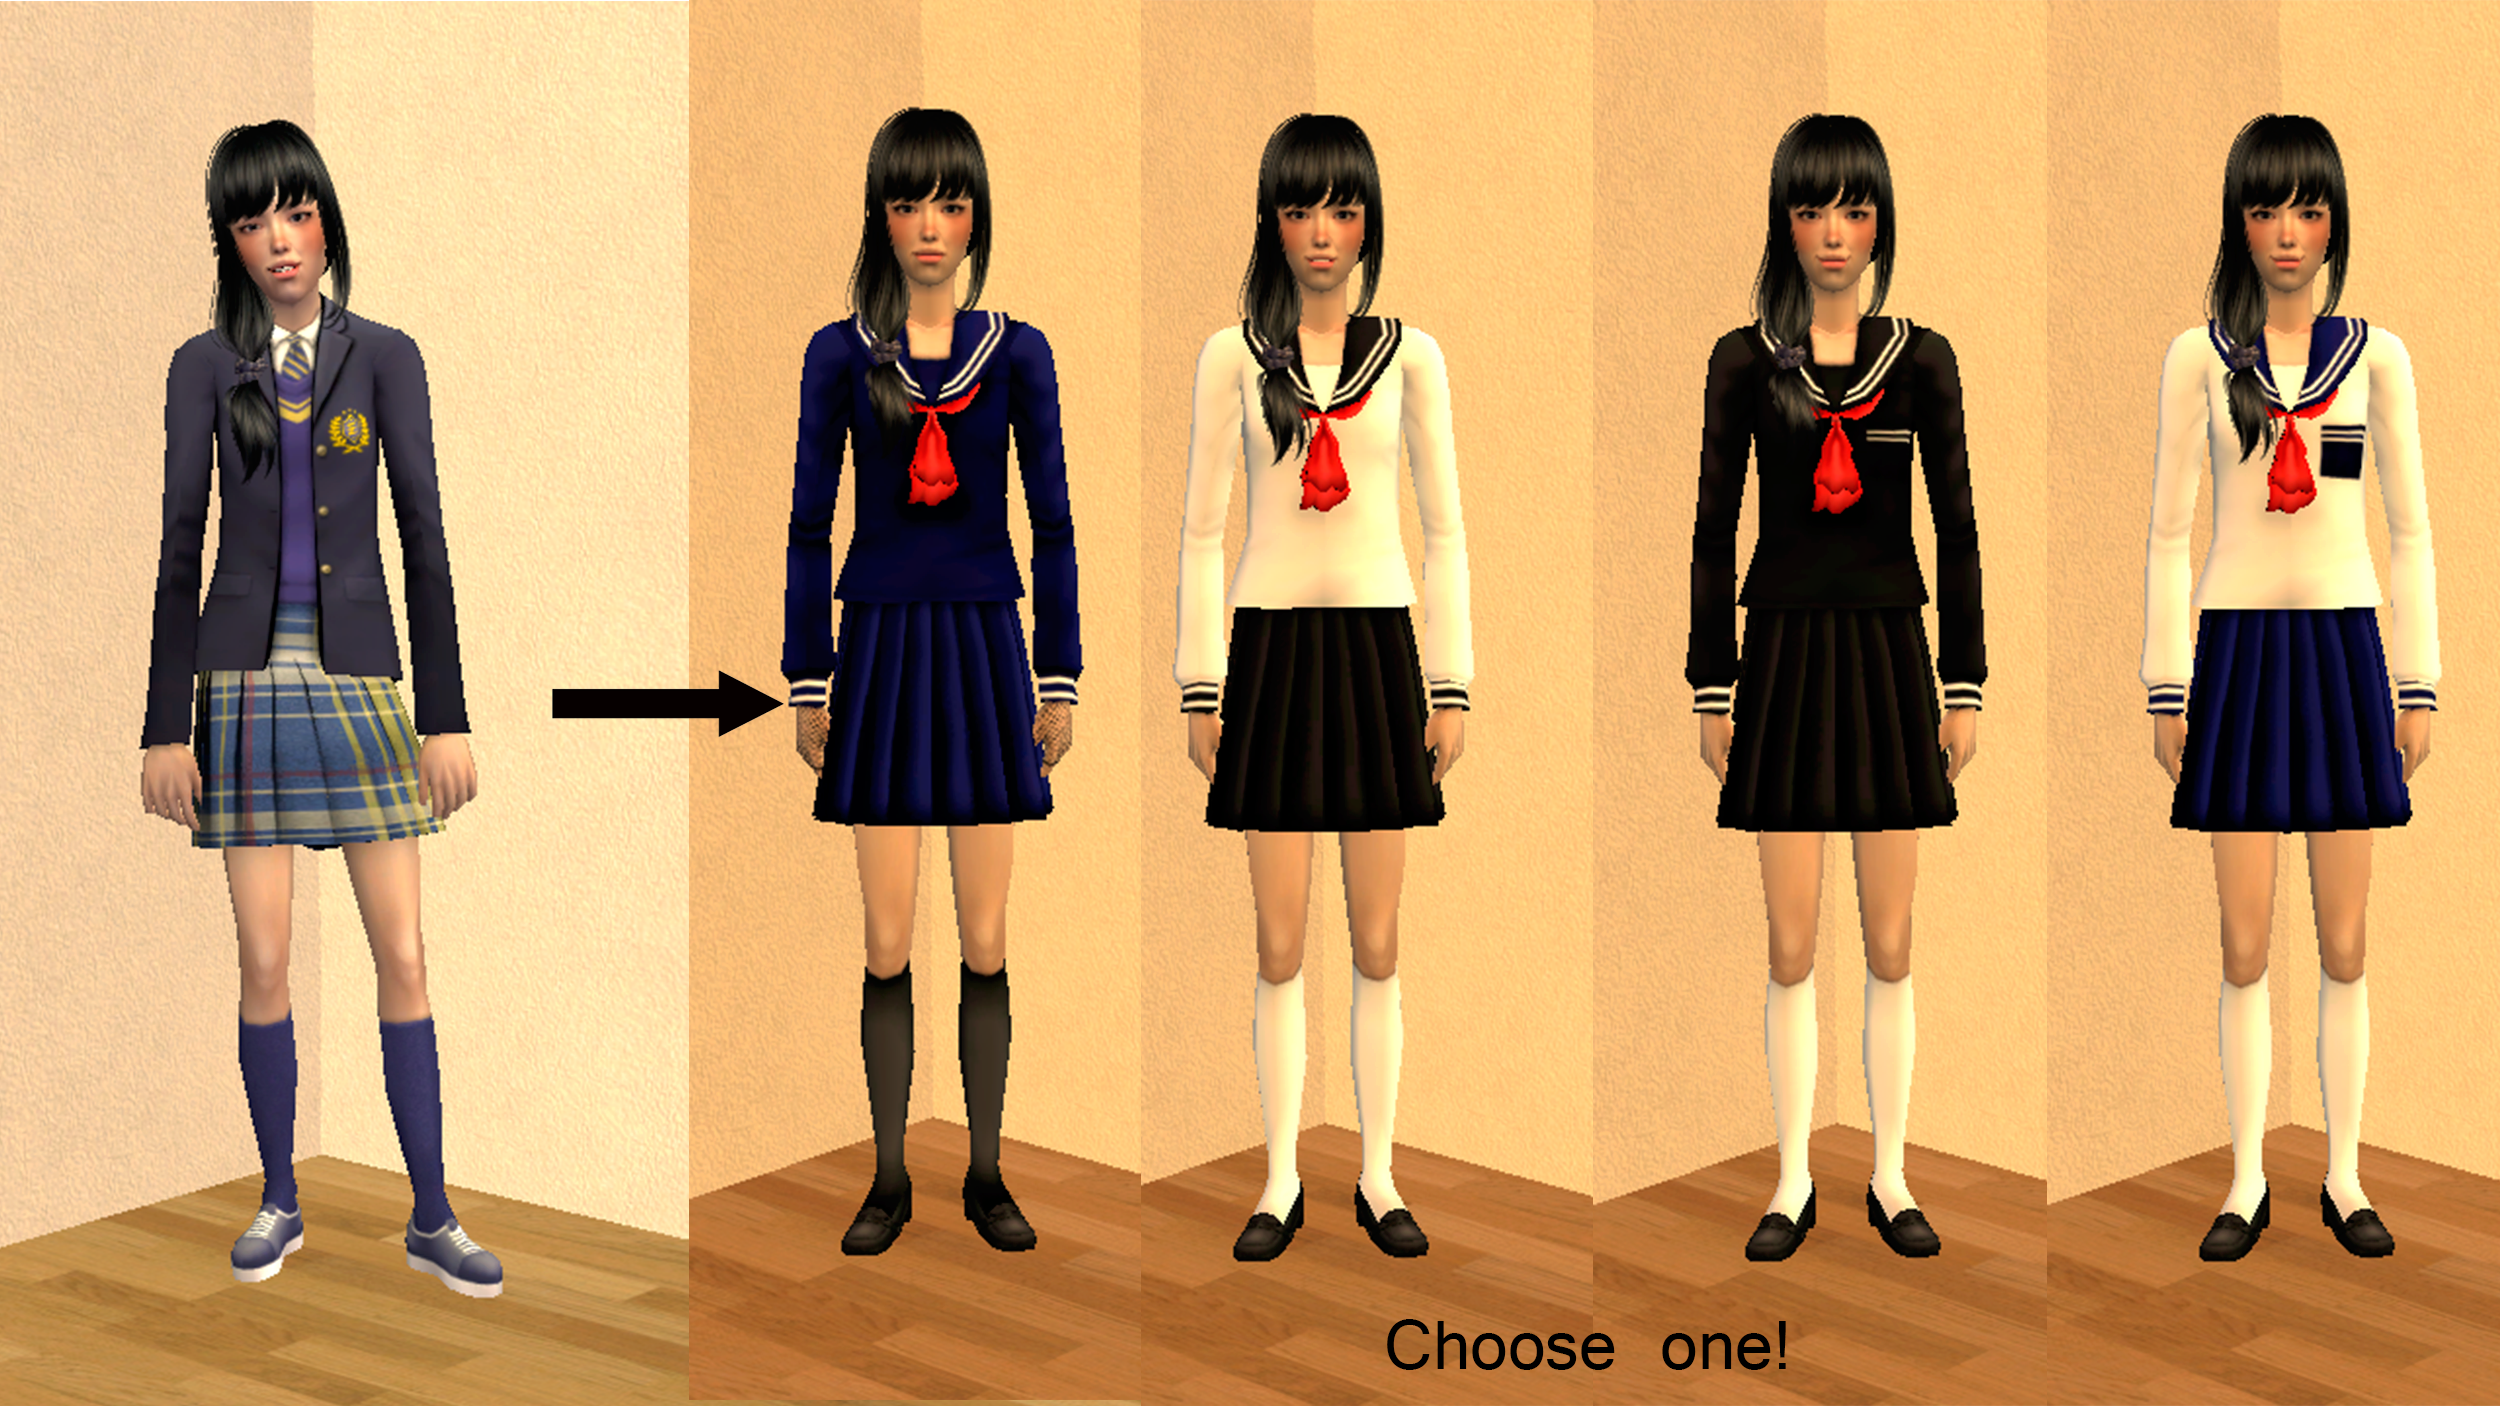 SIMS 4 японская Школьная форма. SIMS 4 Sailor uniform. Японская Школьная форма симс 4.